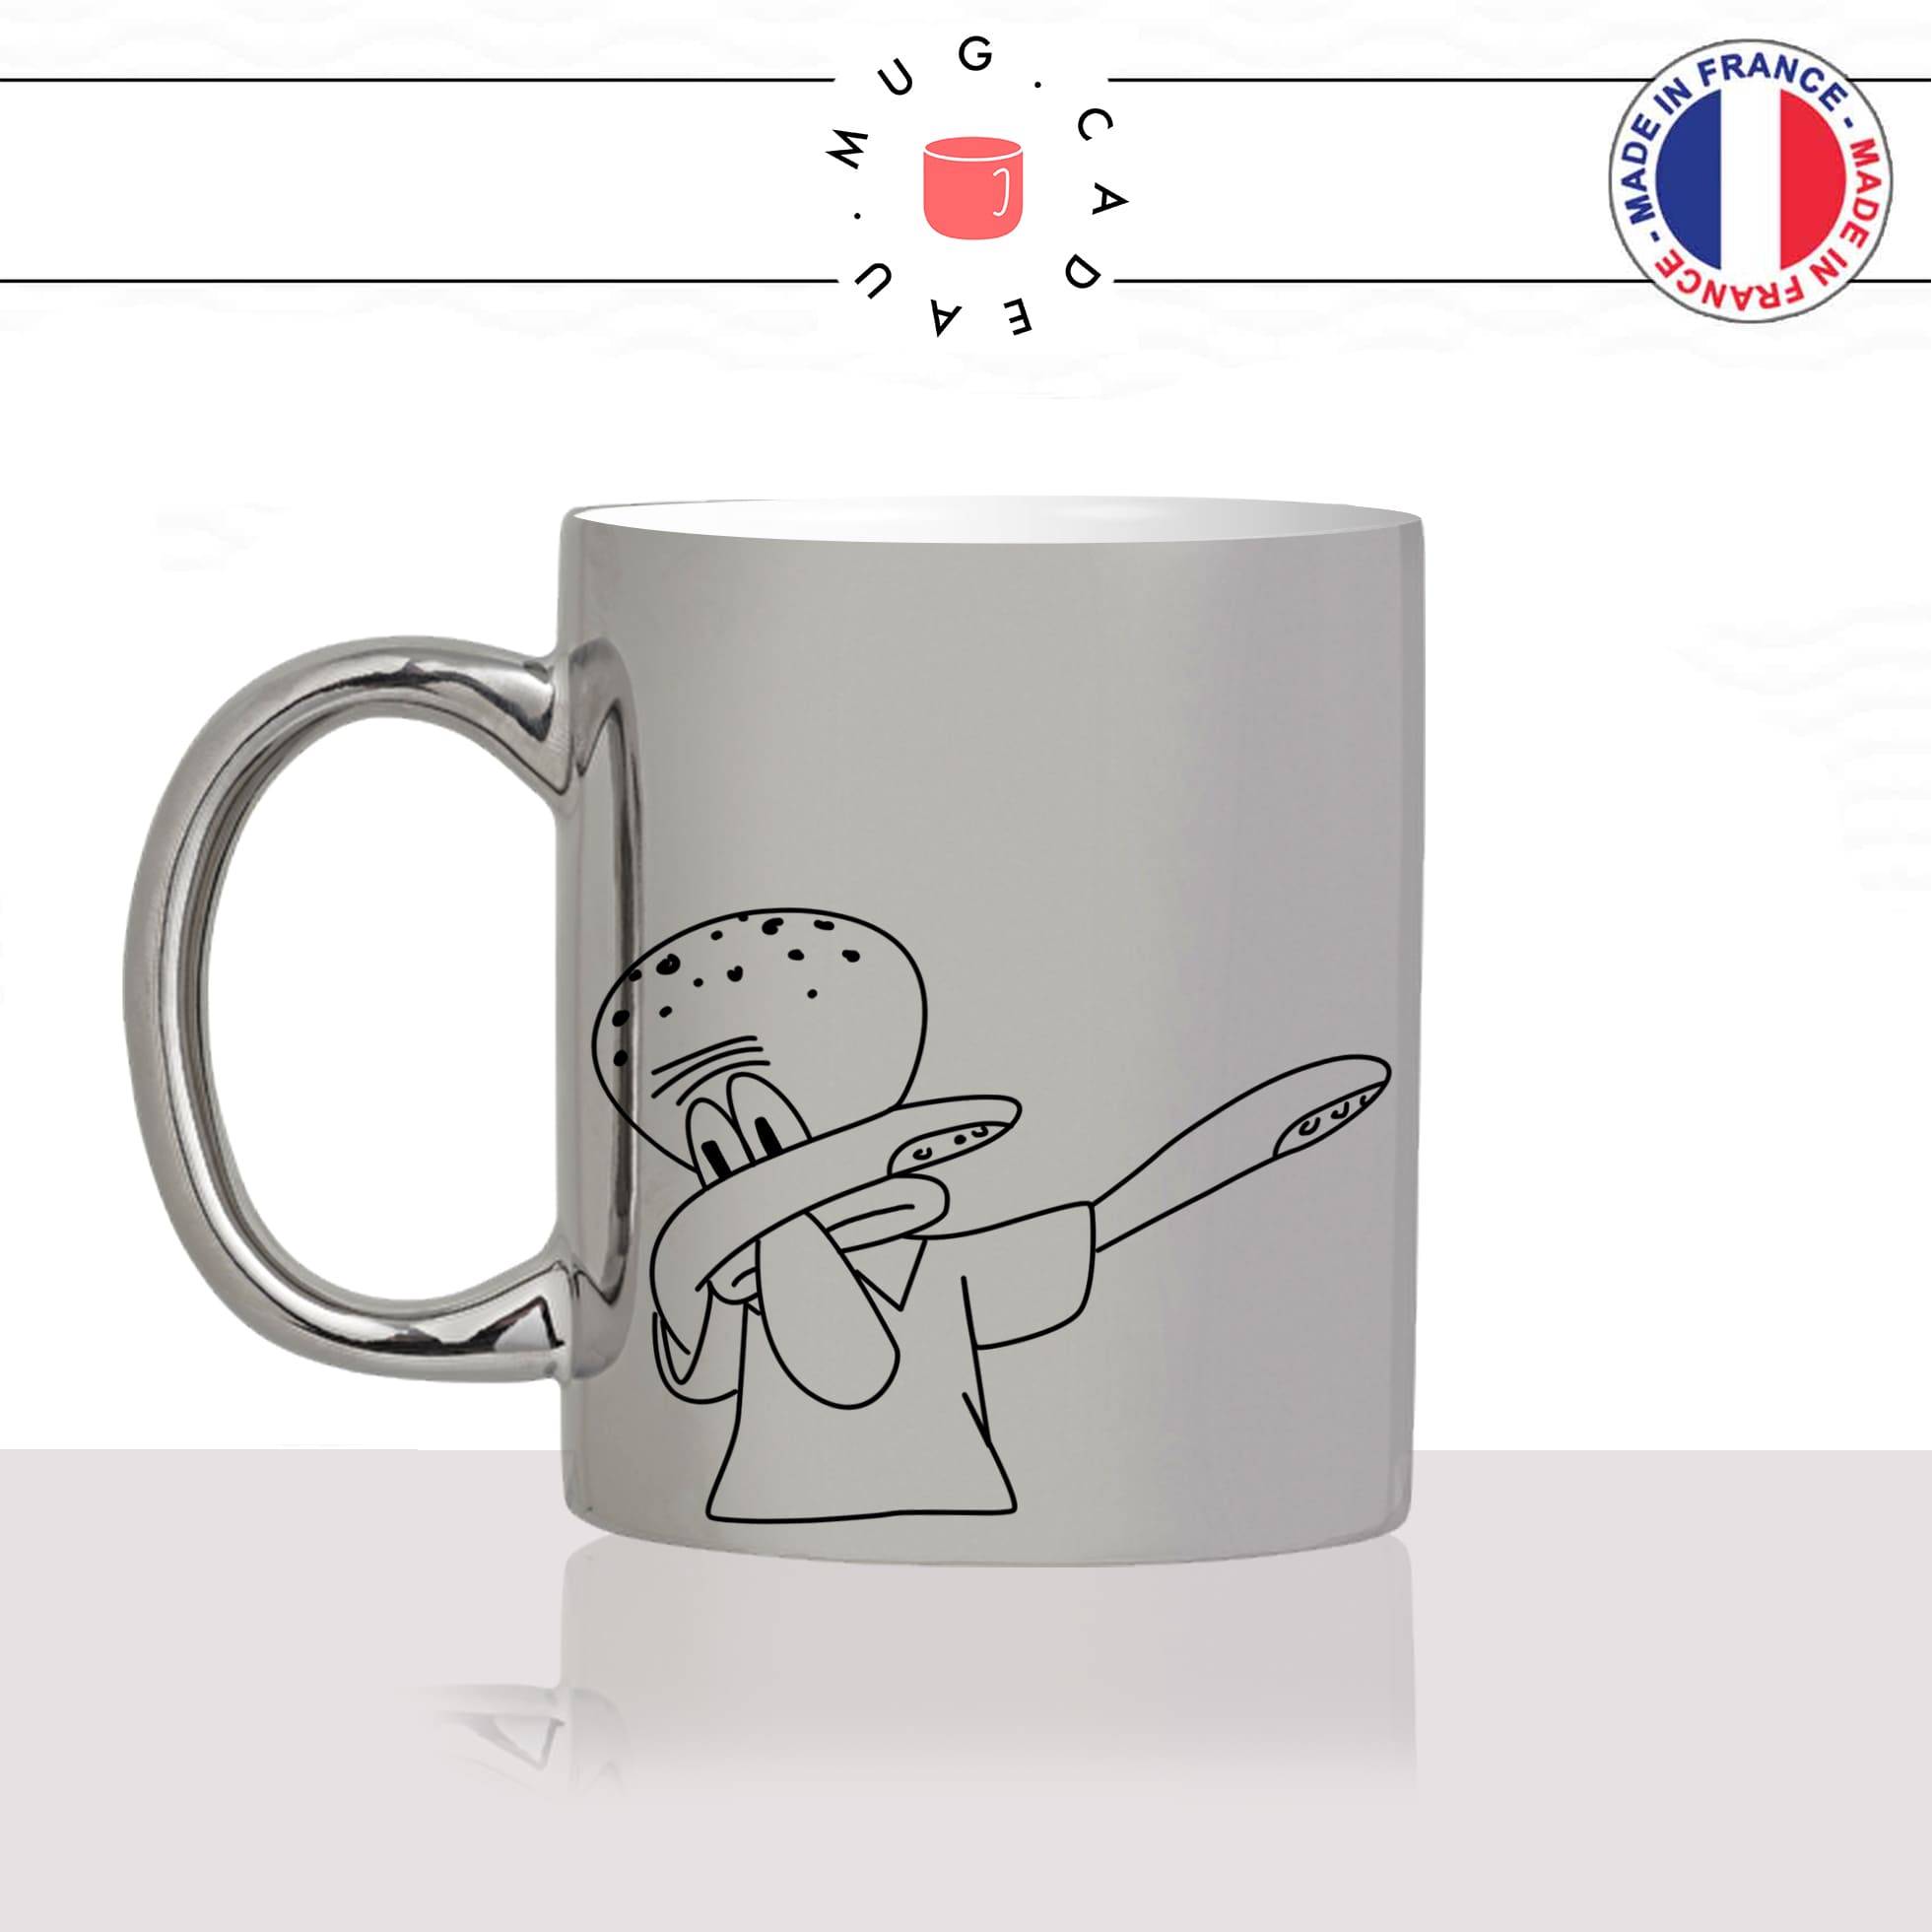 mug-tasse-argent-argenté-silver-carlos-dessin-animé-éponge-dhab-dab-danse-mignon-enfant-humour-idée-cadeau-fun-cool-café-thé